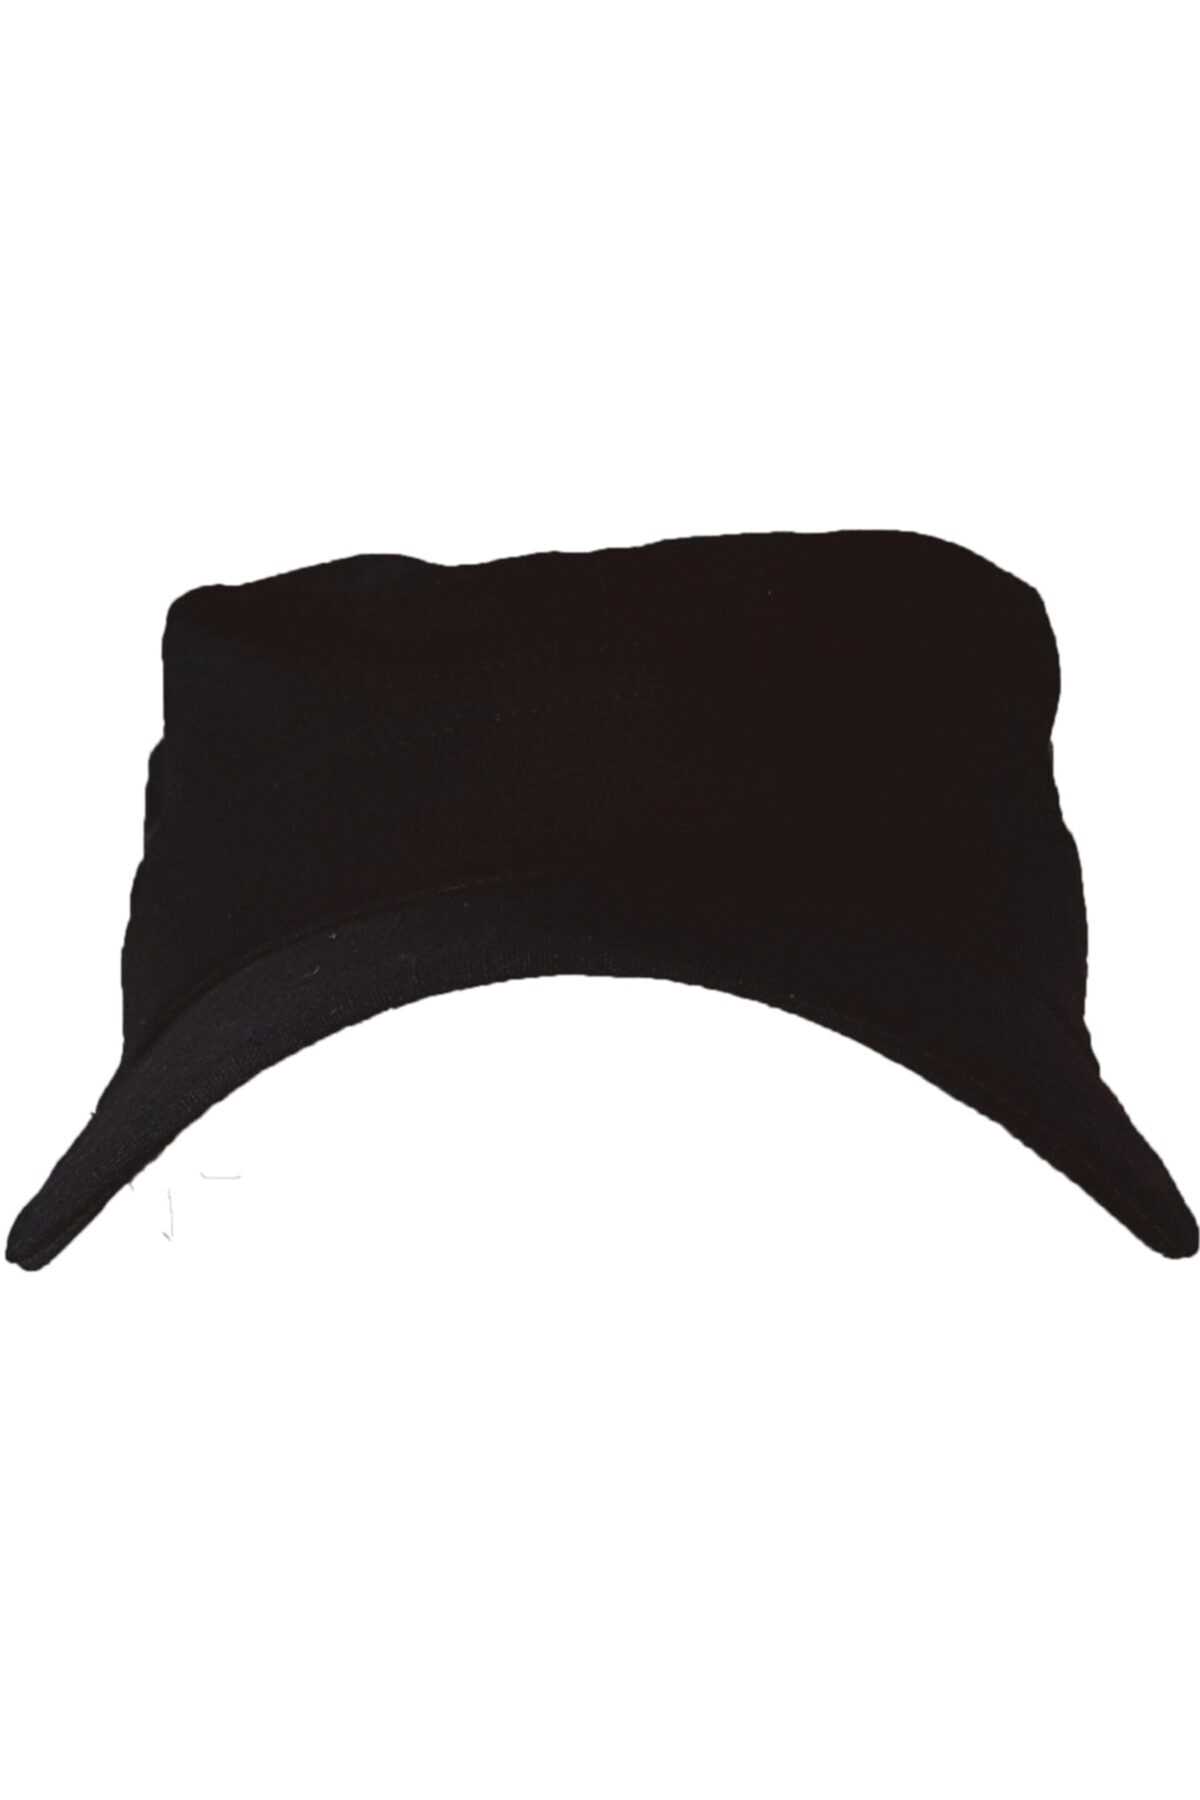 کلاه زنانه ساده برند BİKATEX رنگ مشکی کد ty109013233